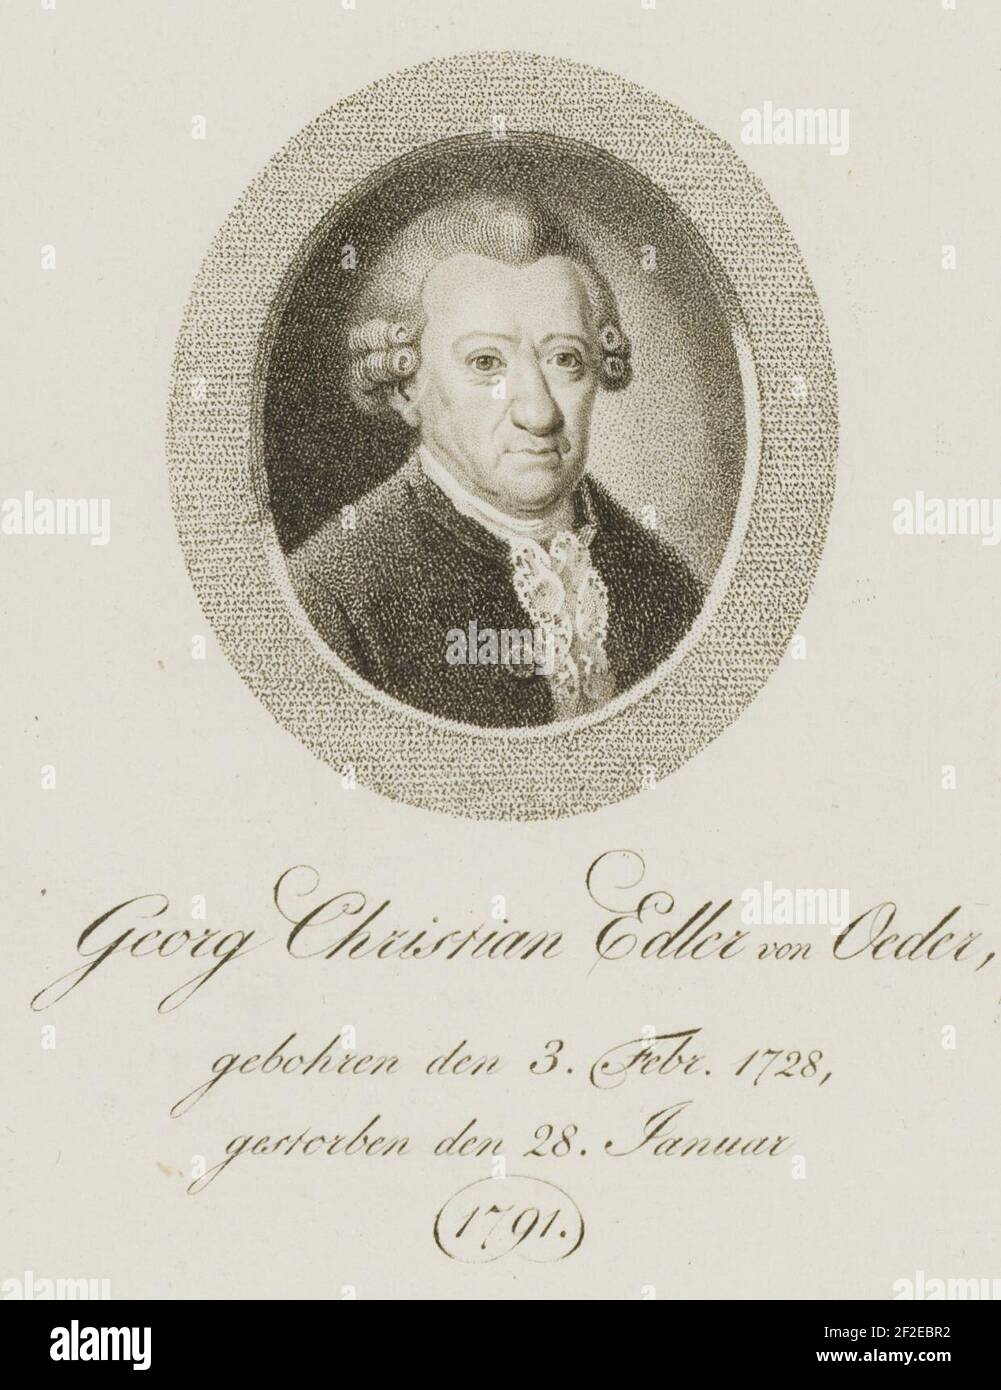 Georg Christian Edler von Oeder, gebohren den 3. Febr. 1728, gestorben den 28. Januar. Stock Photo